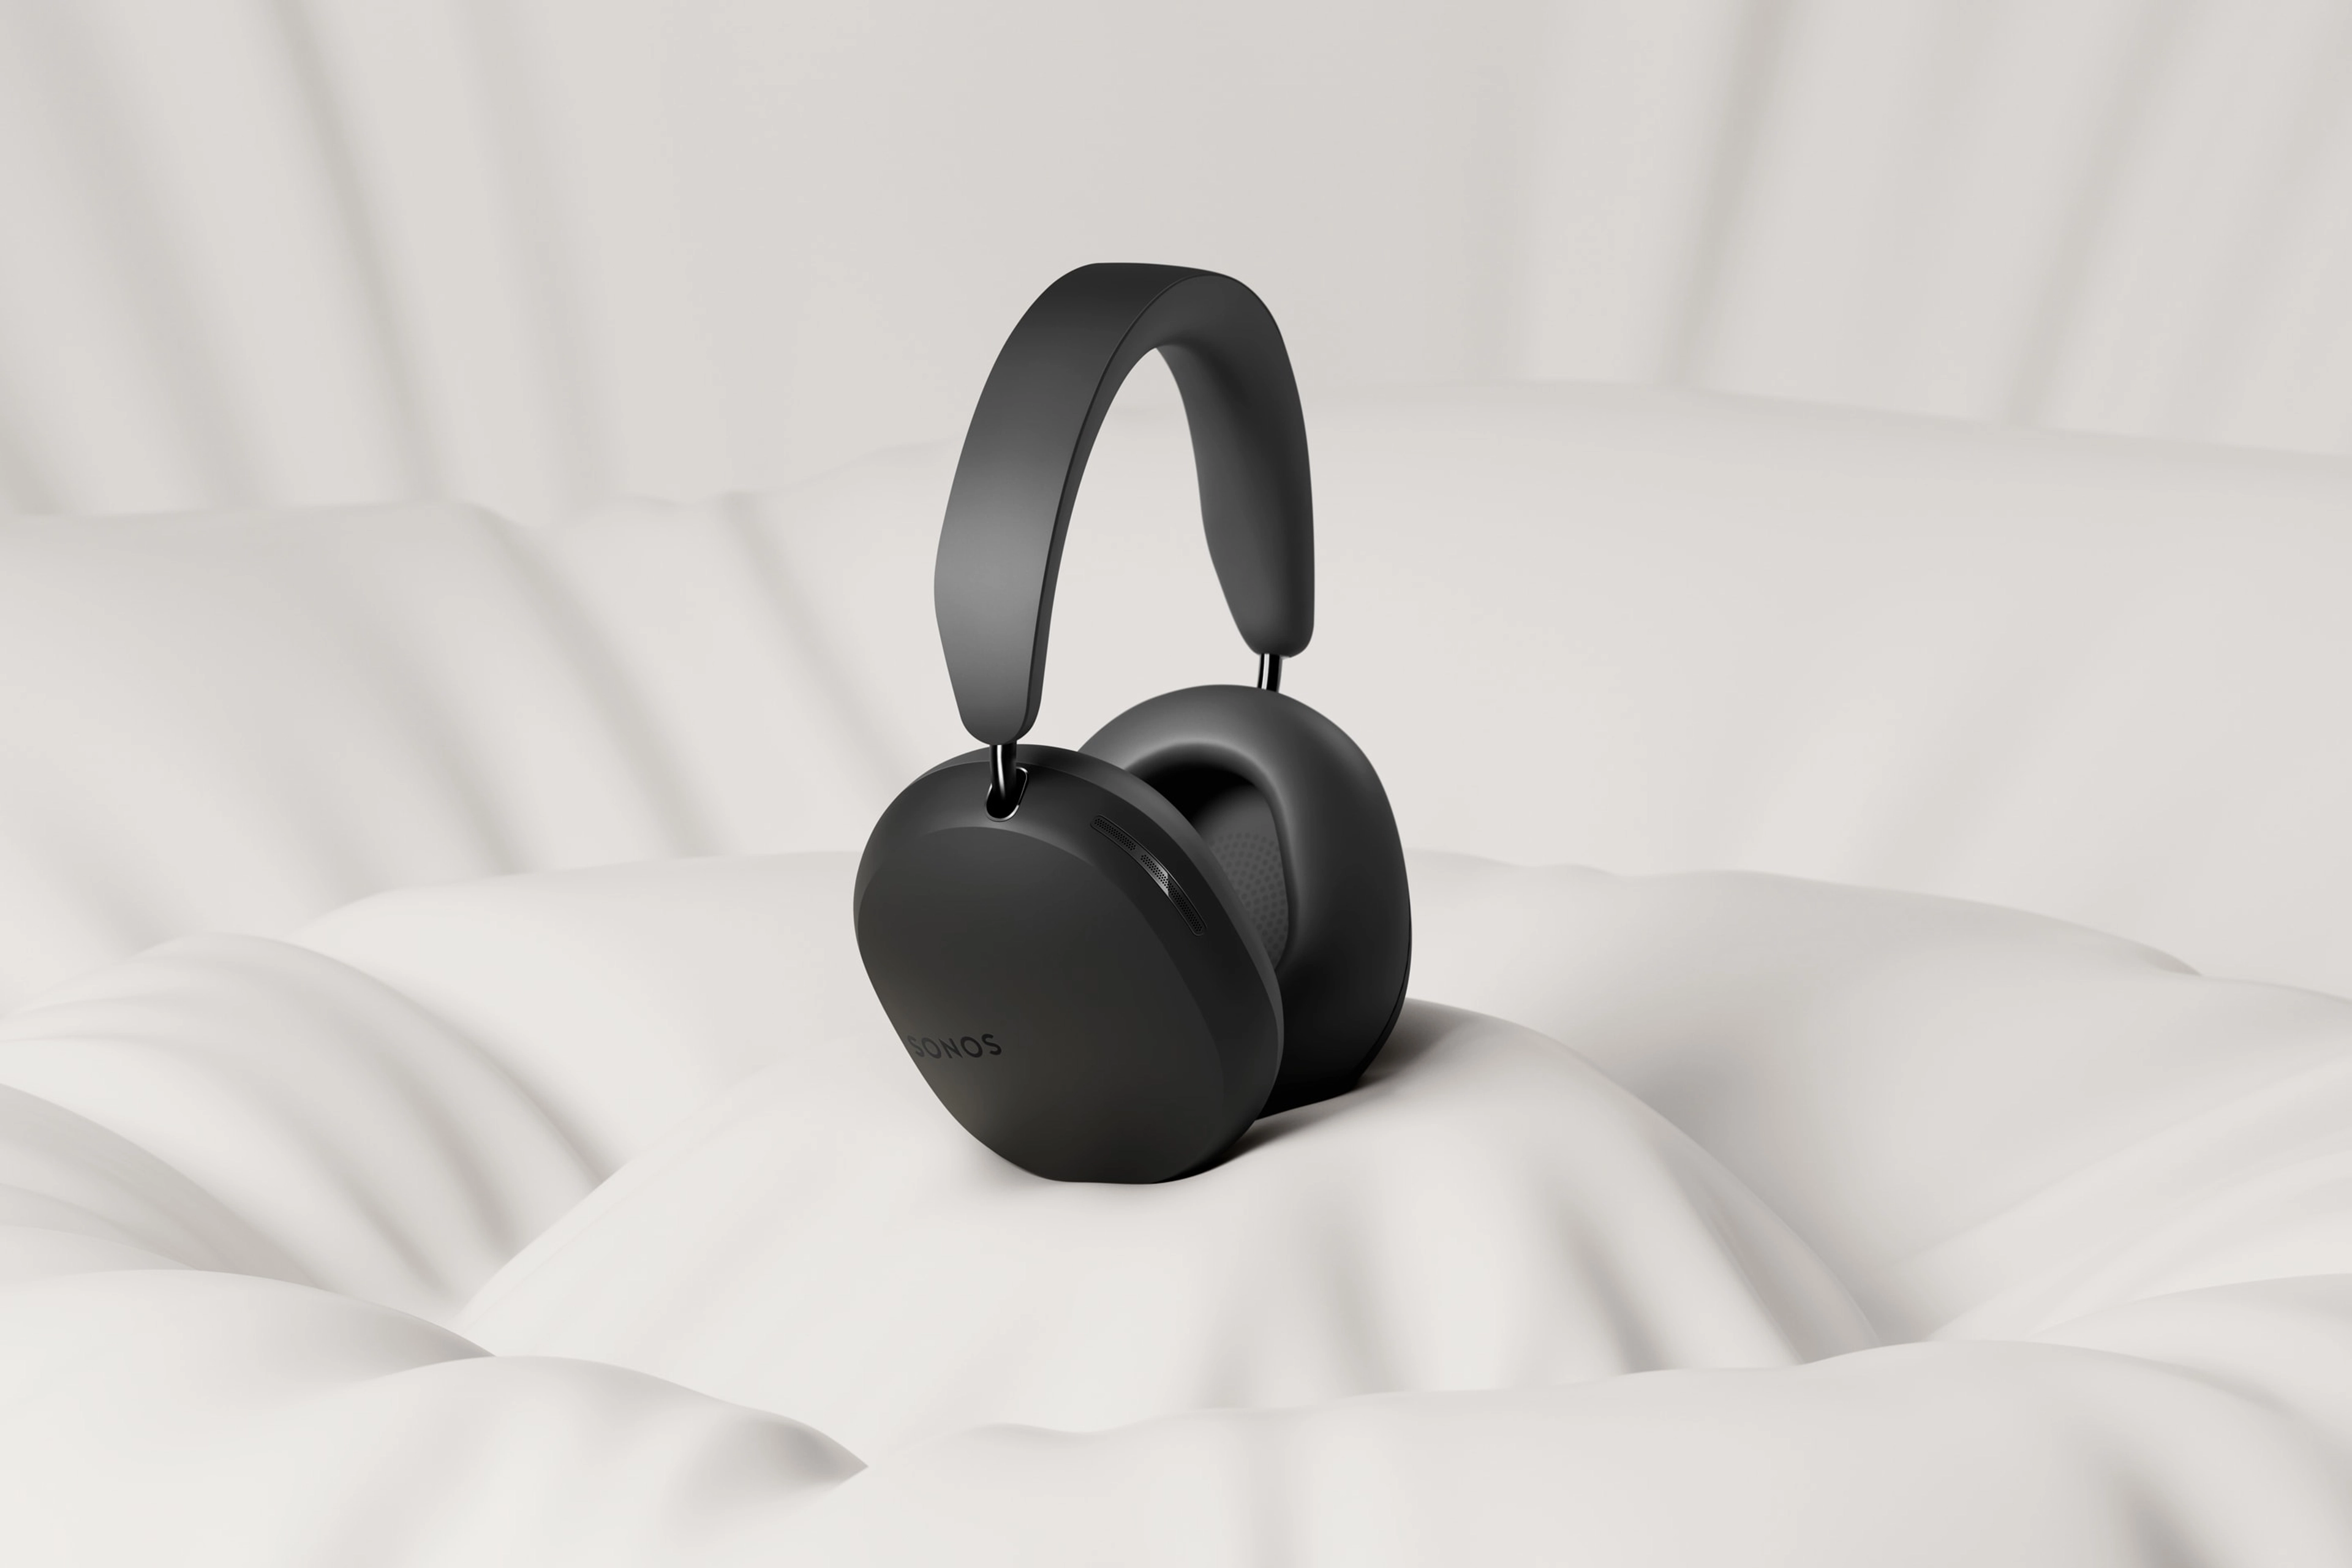 New Sonos Ace Wireless Headphones